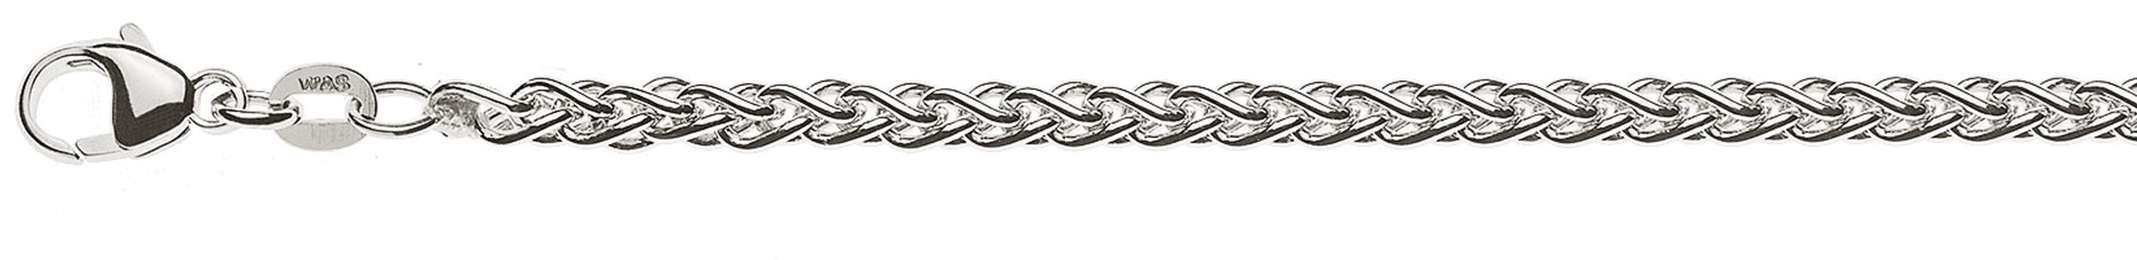 AURONOS Prestige Necklace white gold 18K cable chain 60cm 3.3mm